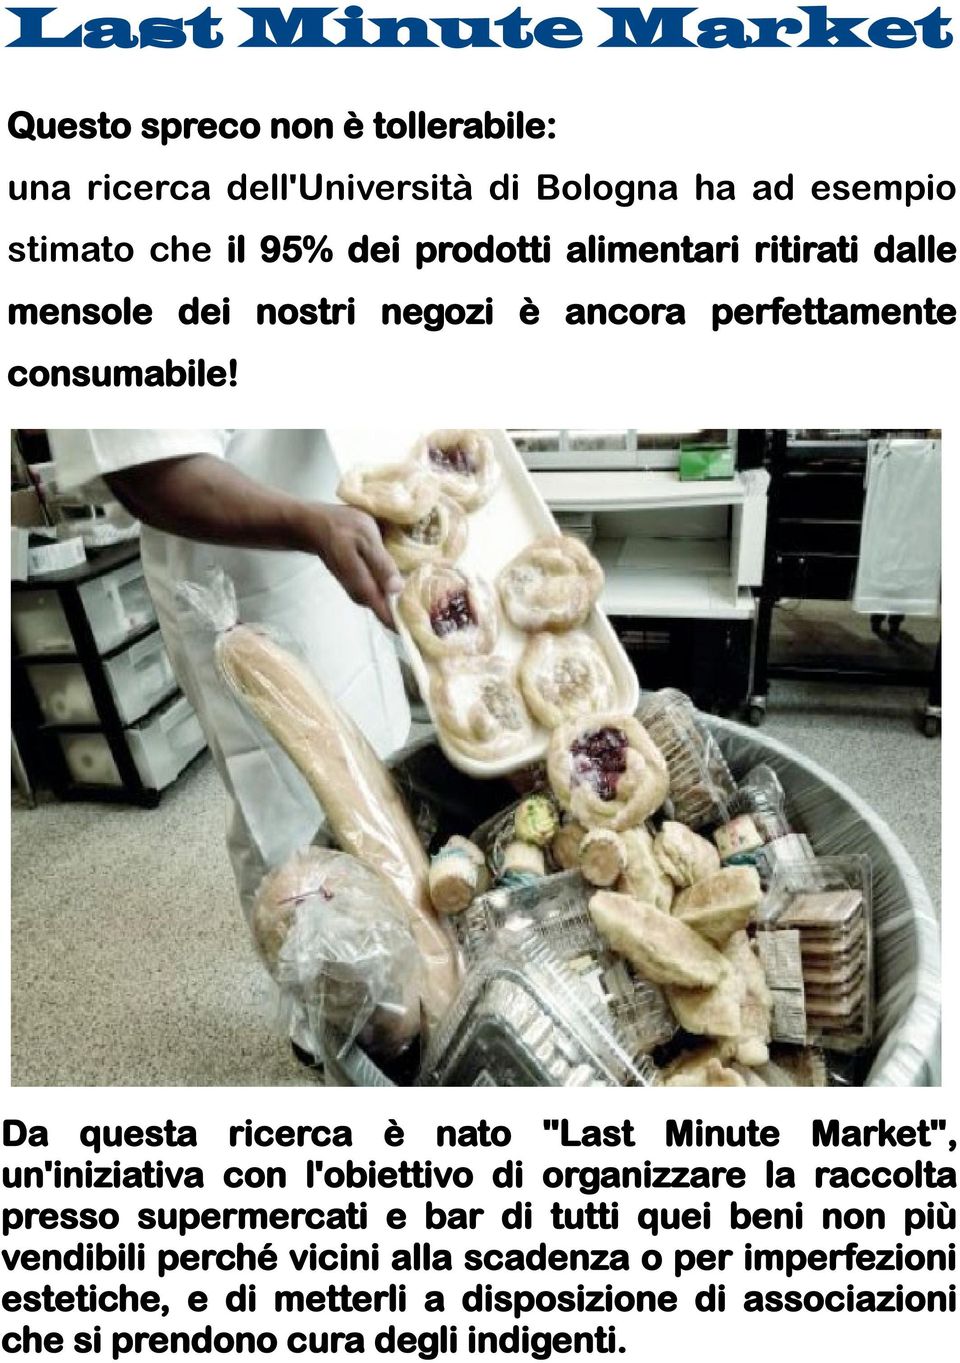 Da questa ricerca è nato "Last Minute Market", un'iniziativa con l'obiettivo di organizzare la raccolta presso supermercati e bar di